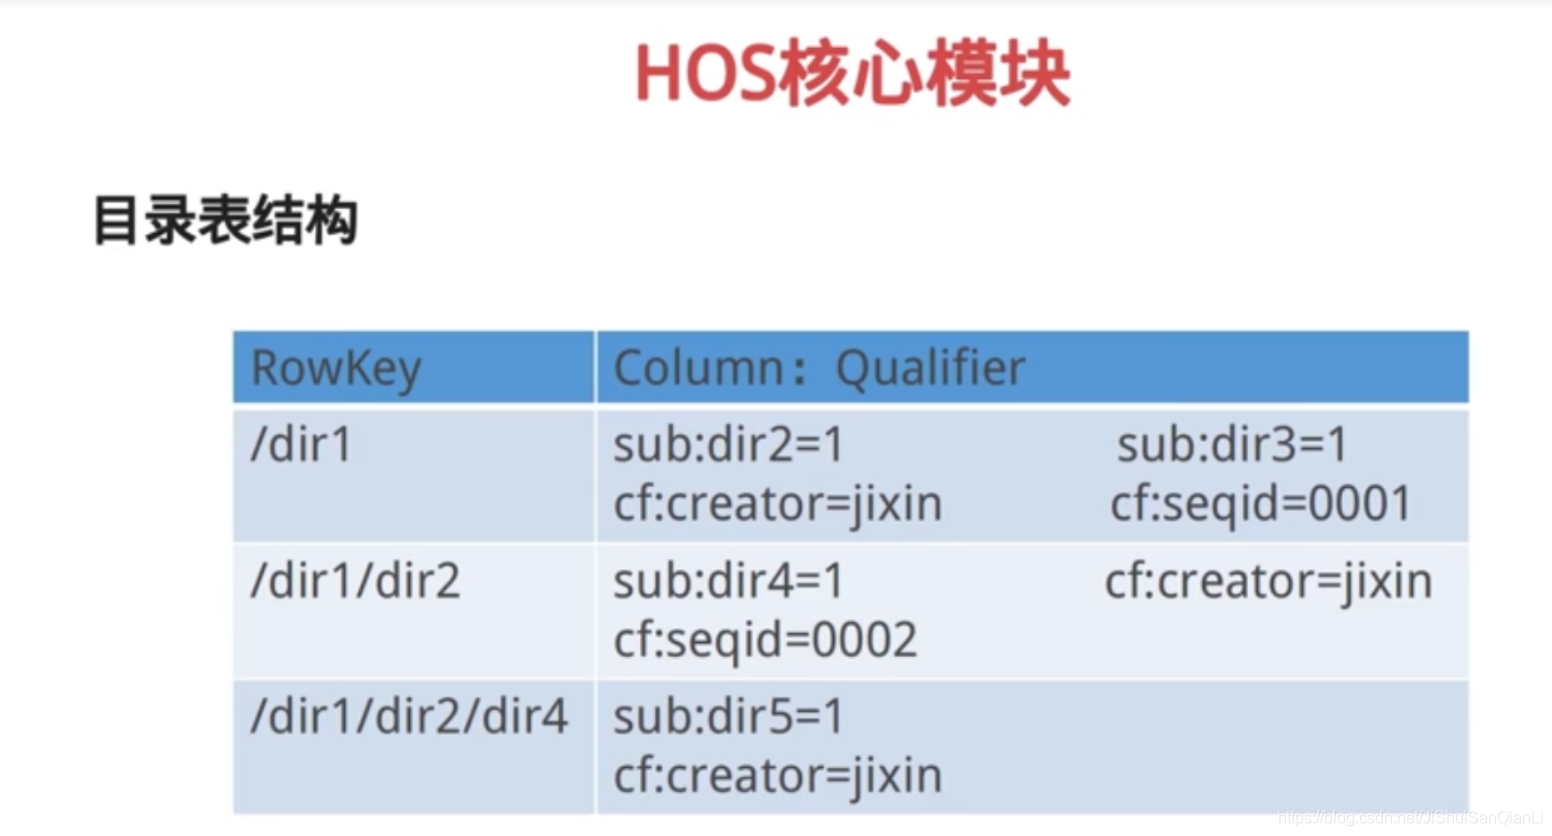 基于Hbase和SpringBoot的分布式HOS文件存储系统（一）